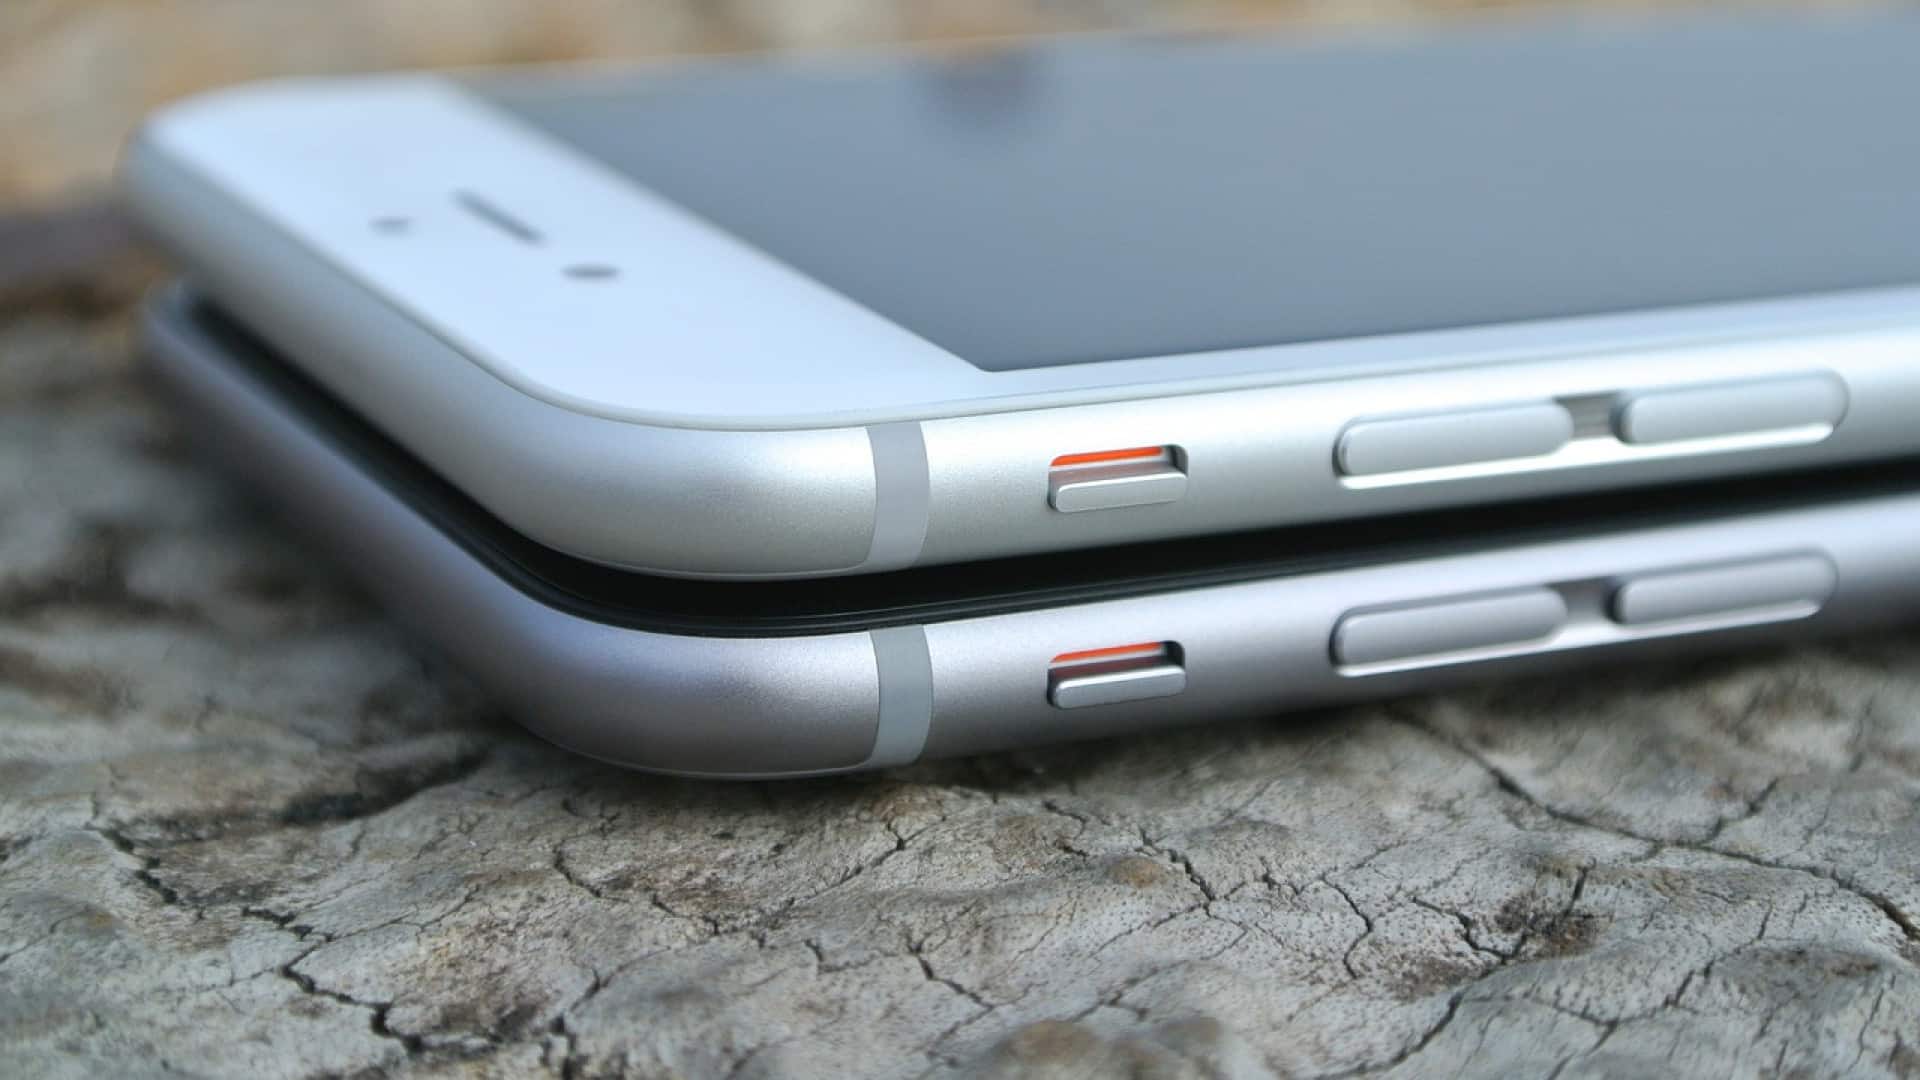 Réparation iPhone : ce qu’il faut savoir avant de vous lancer